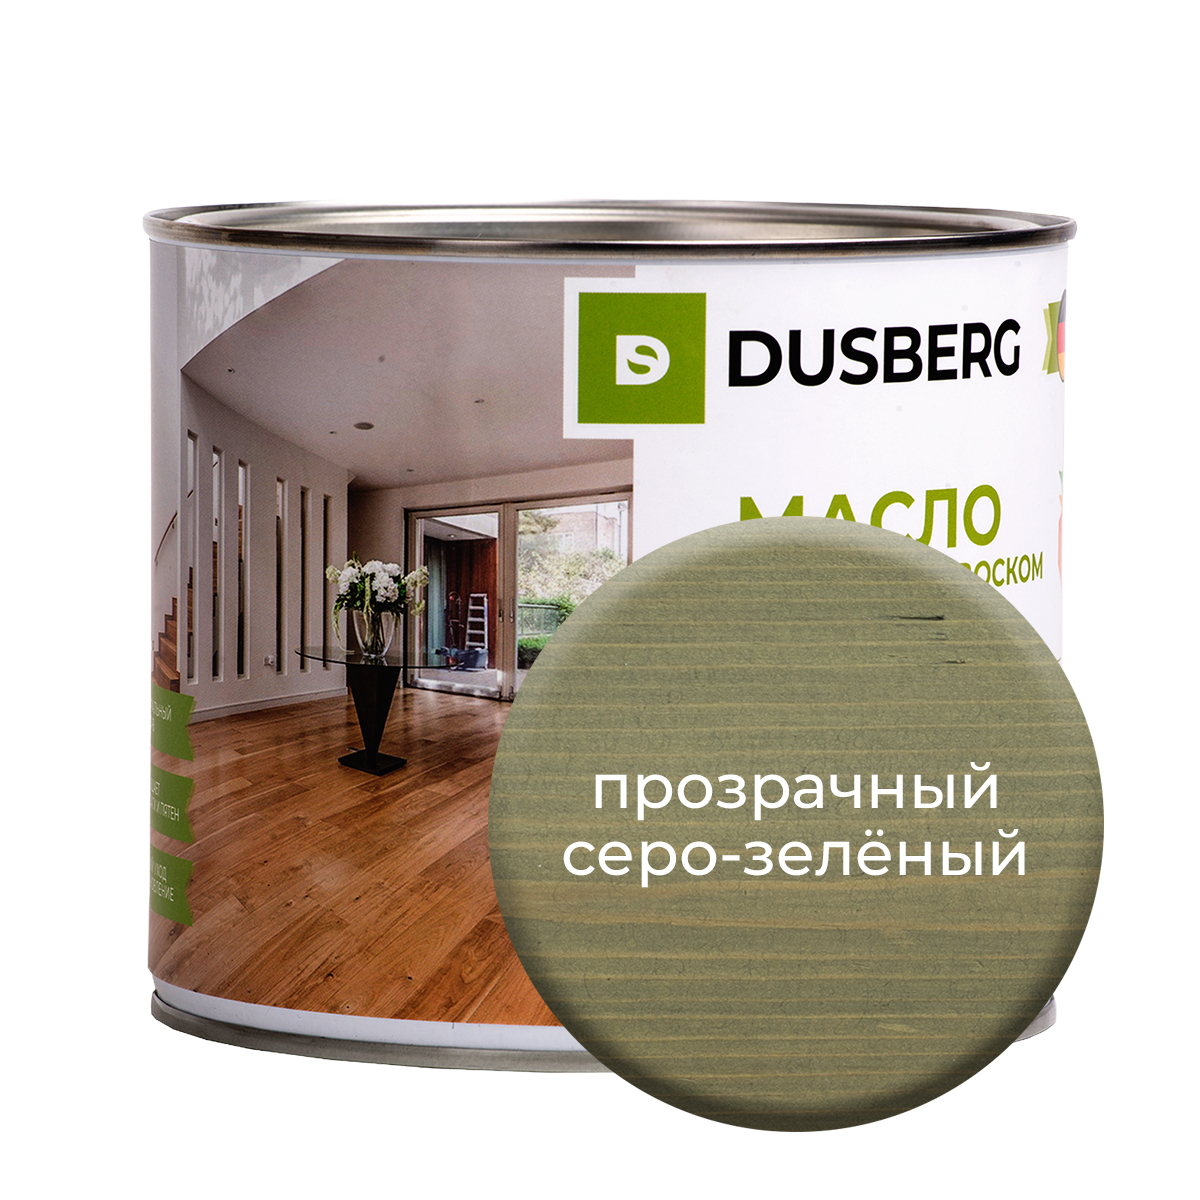 Масло Dusberg с твердым воском на бесцветной основе, 2 л Прозрачный серо-зеленый масло dusberg с твердым воском на бес ной основе 2 л